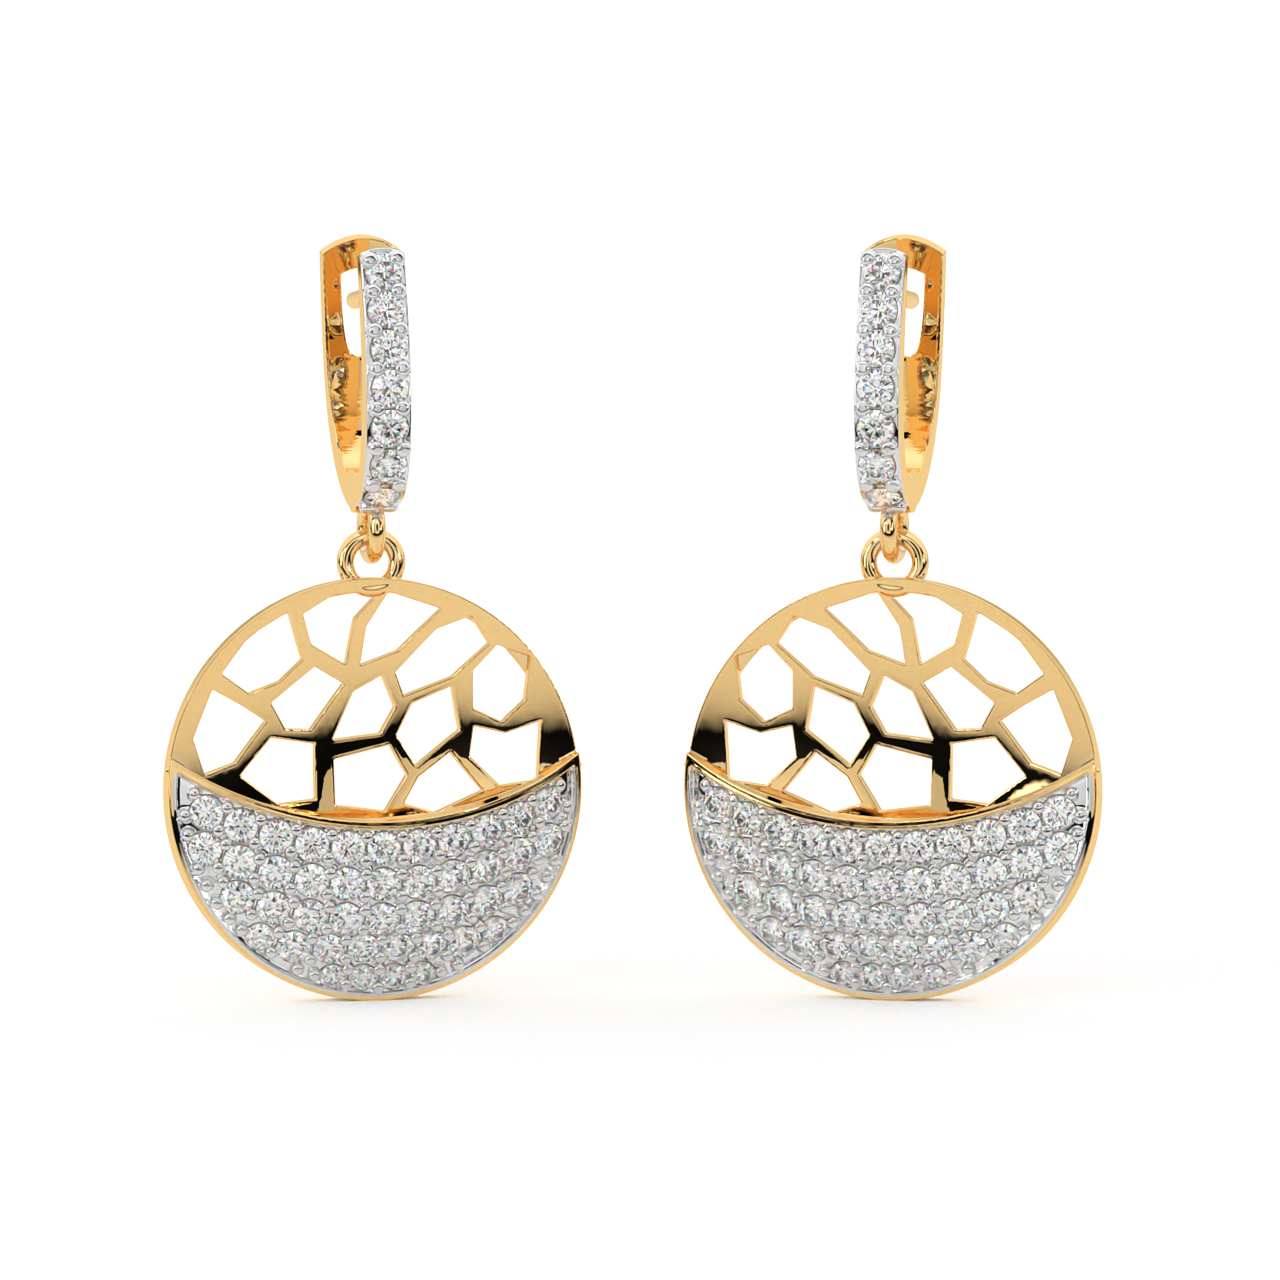 Sphere Design Diamond Earrings